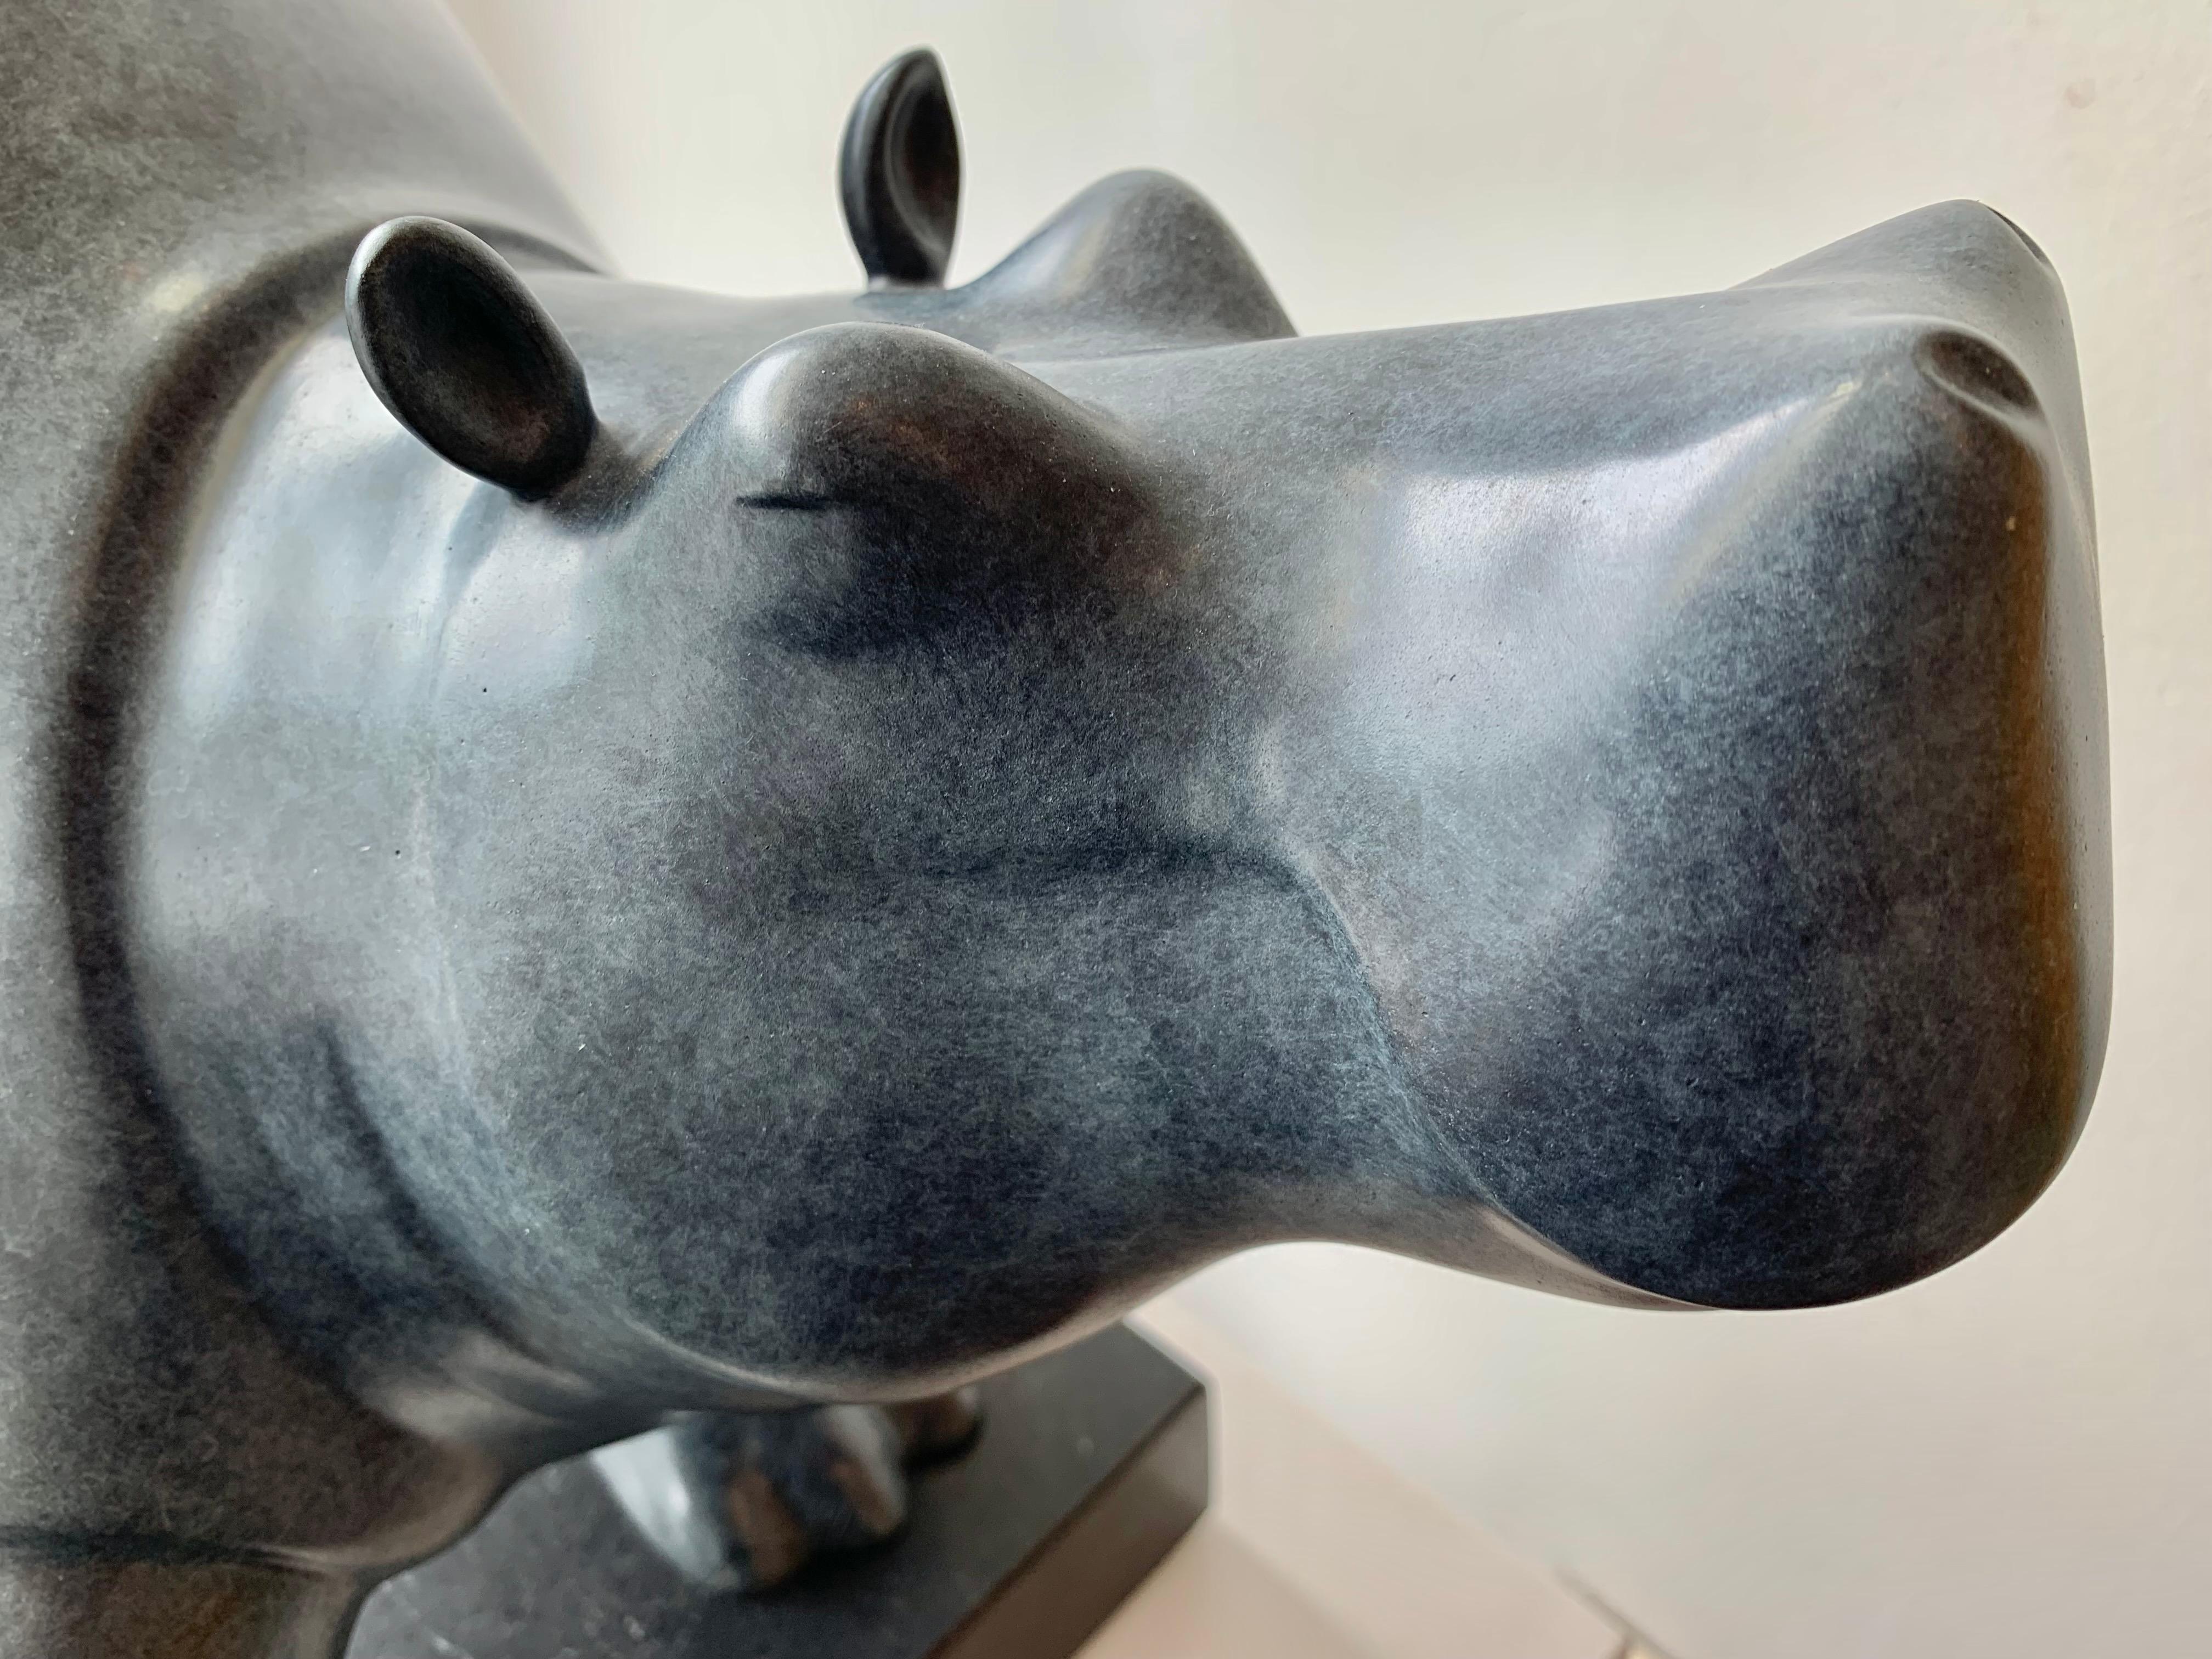 Dansende Hippo (Tanzendes Nilpferd) Bronze Figurative Tierskulptur Vorrätig

Evert den Hartog (geboren 1949 in Groot-Ammers, Niederlande) absolvierte eine Ausbildung zum Bildhauer an der Rotterdamer Akademie der Bildenden Künste. In den Jahren